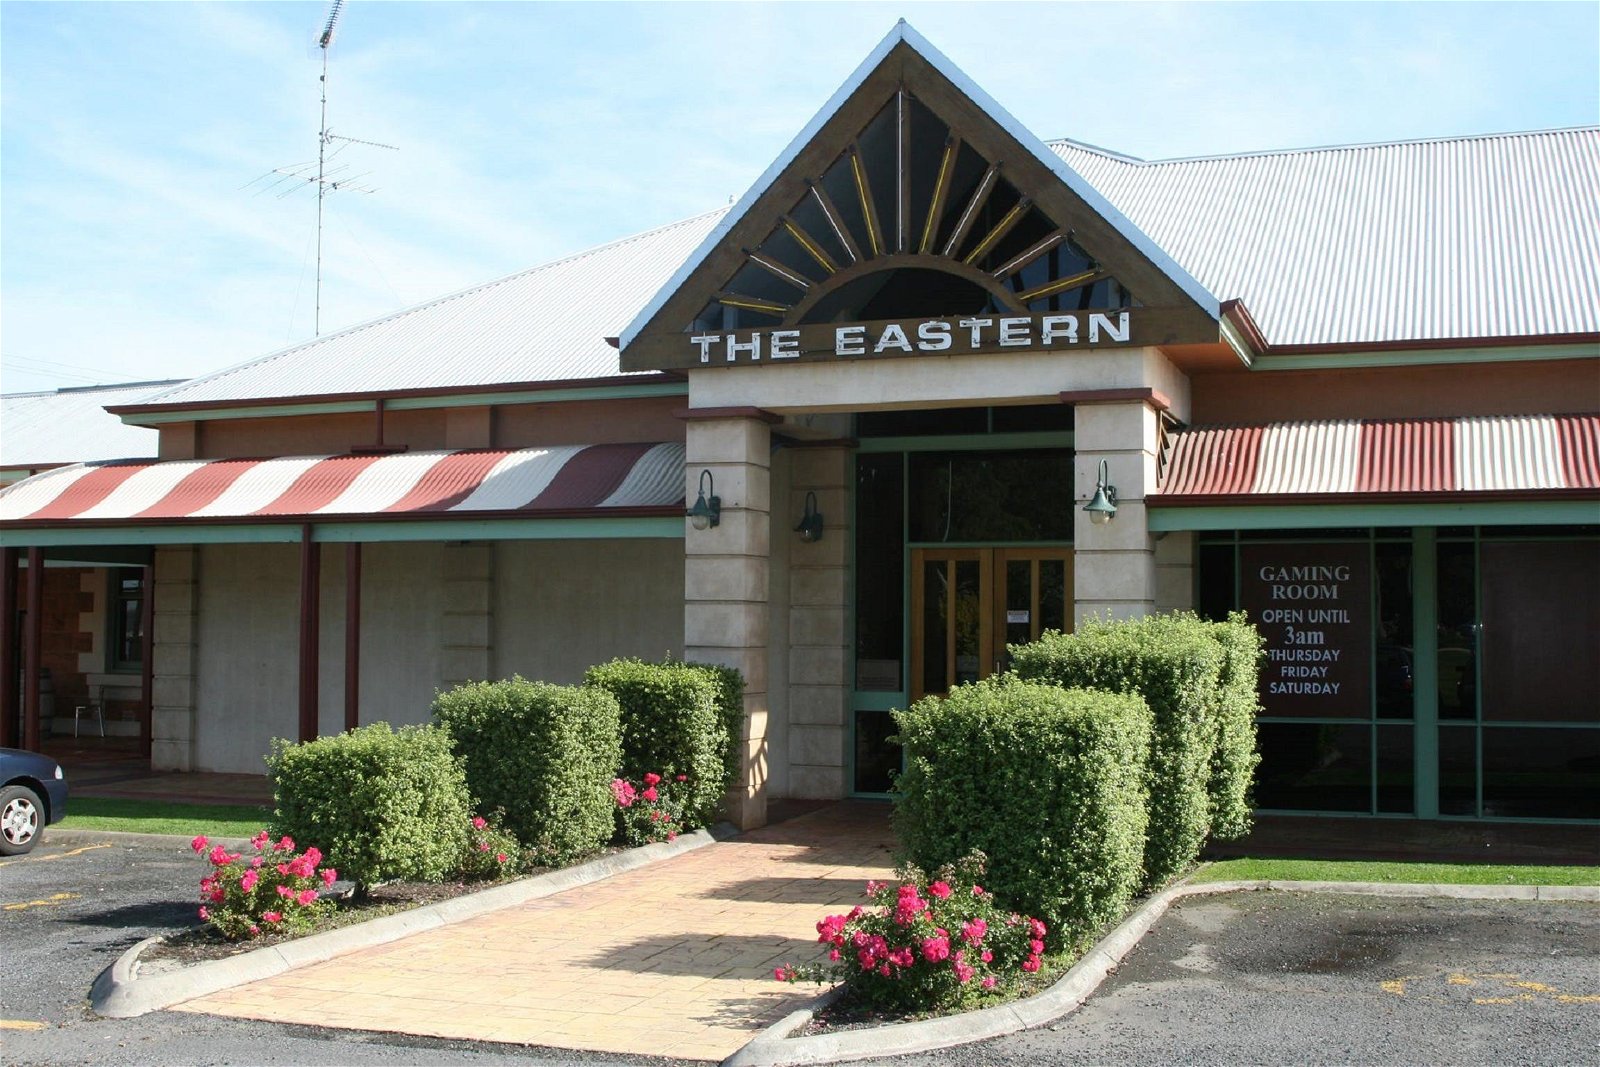 South Eastern Hotel - Pubs Sydney